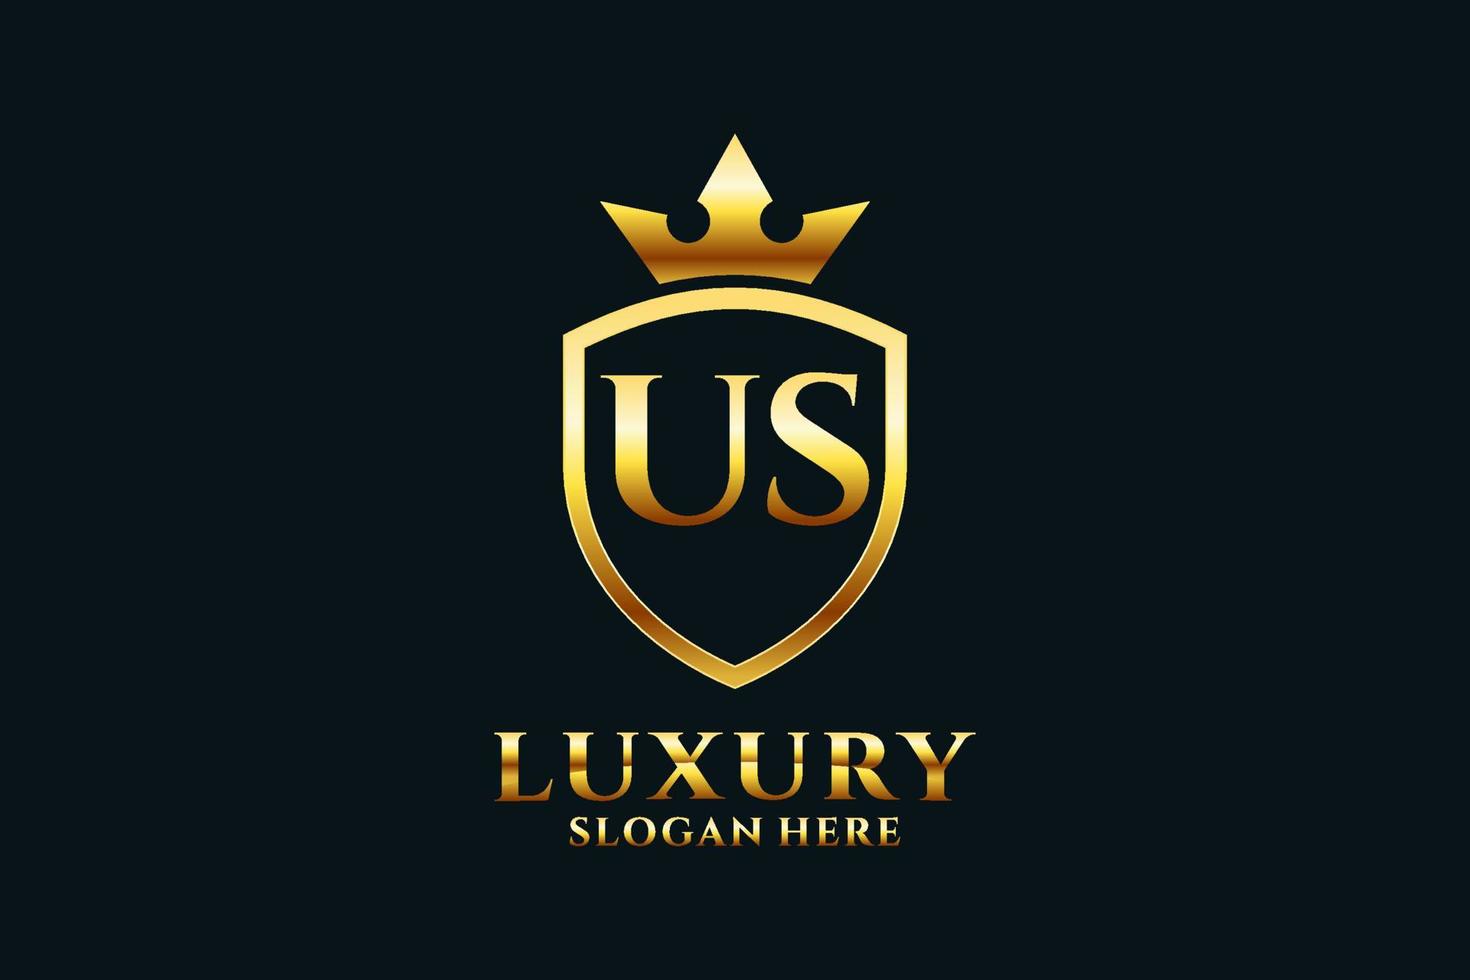 Initialisieren Sie uns elegantes Luxus-Monogramm-Logo oder Abzeichen-Vorlage mit Schriftrollen und königlicher Krone - perfekt für luxuriöse Branding-Projekte vektor